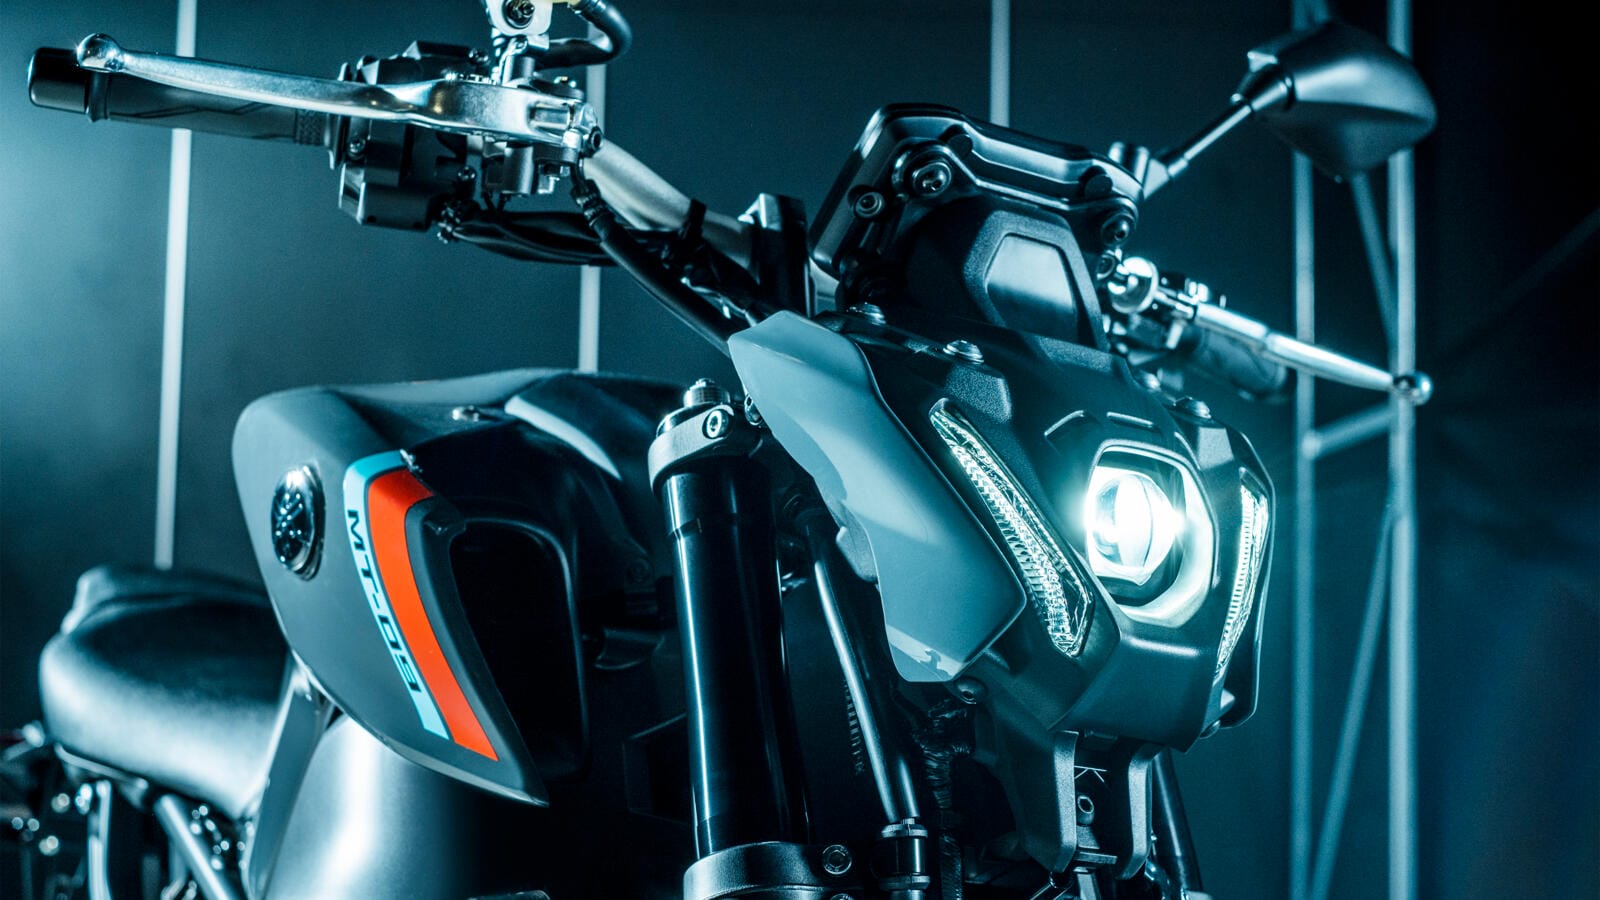 Brandneue Yamaha MT-09 für 2021 vorgestellt
- auch in der MOTORRAD NACHRICHTEN APP